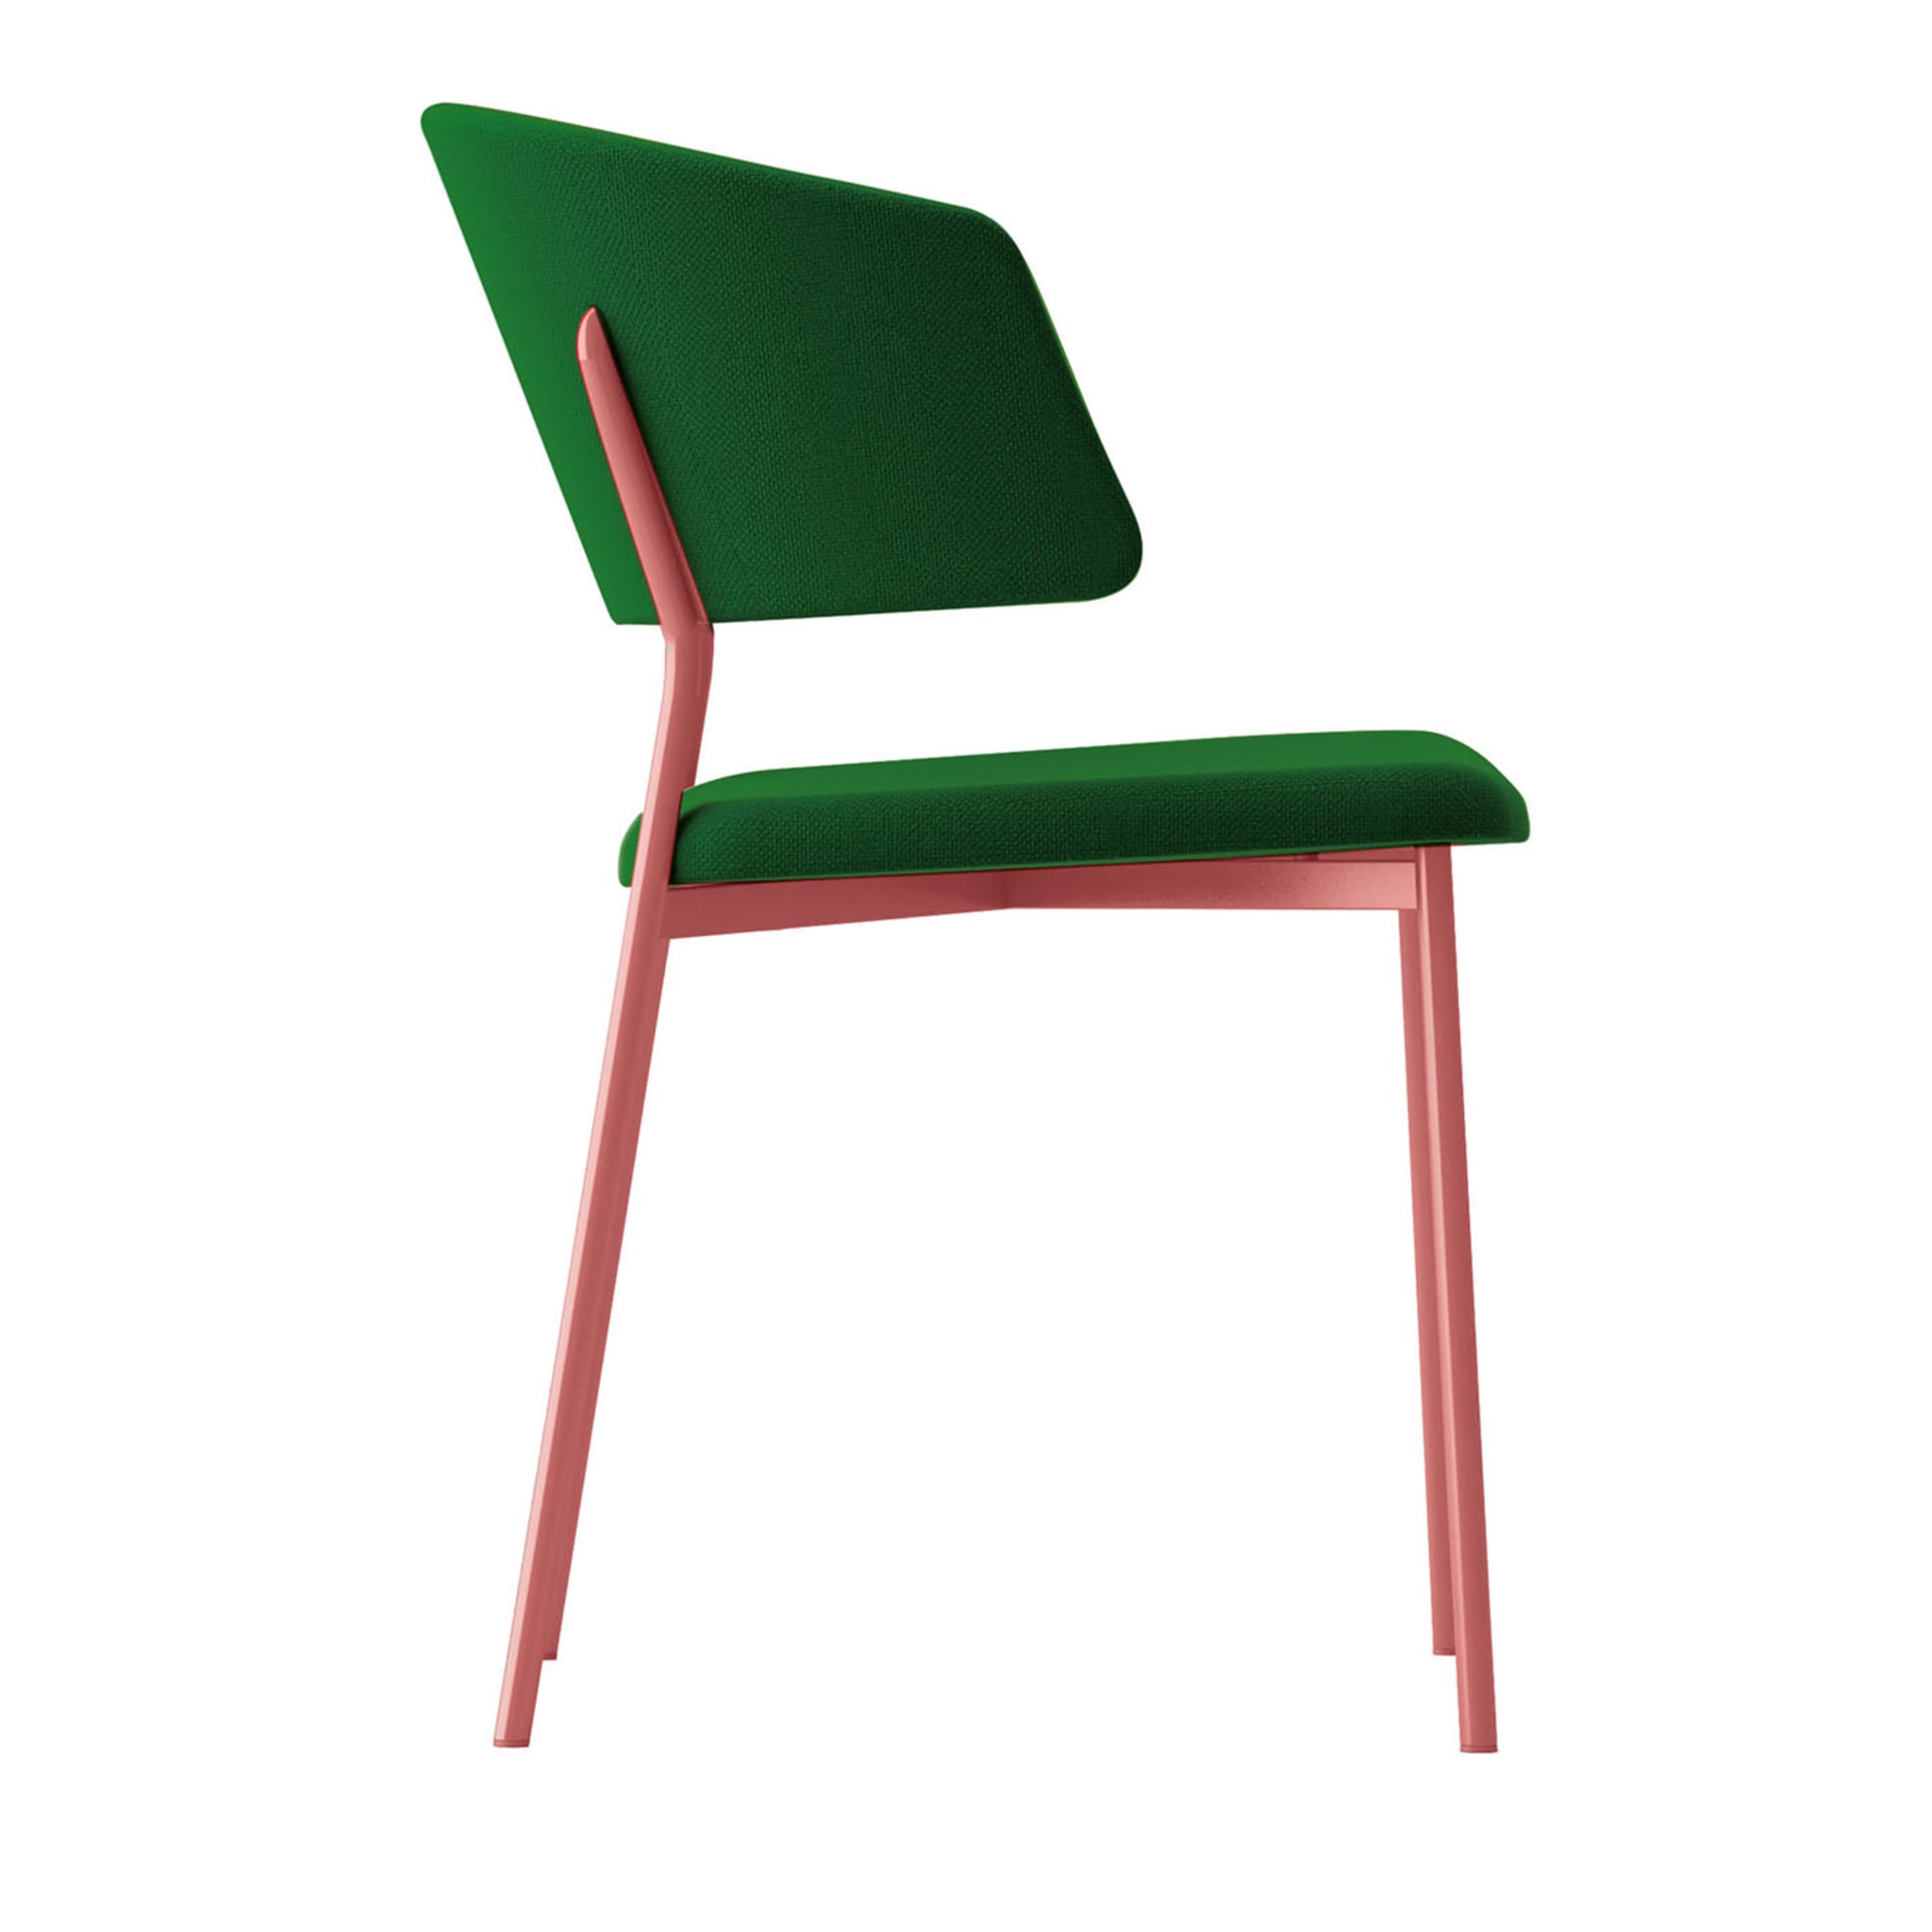 Wrap Steel Grüner und rosa Stuhl von Copiosa Lab - Hauptansicht